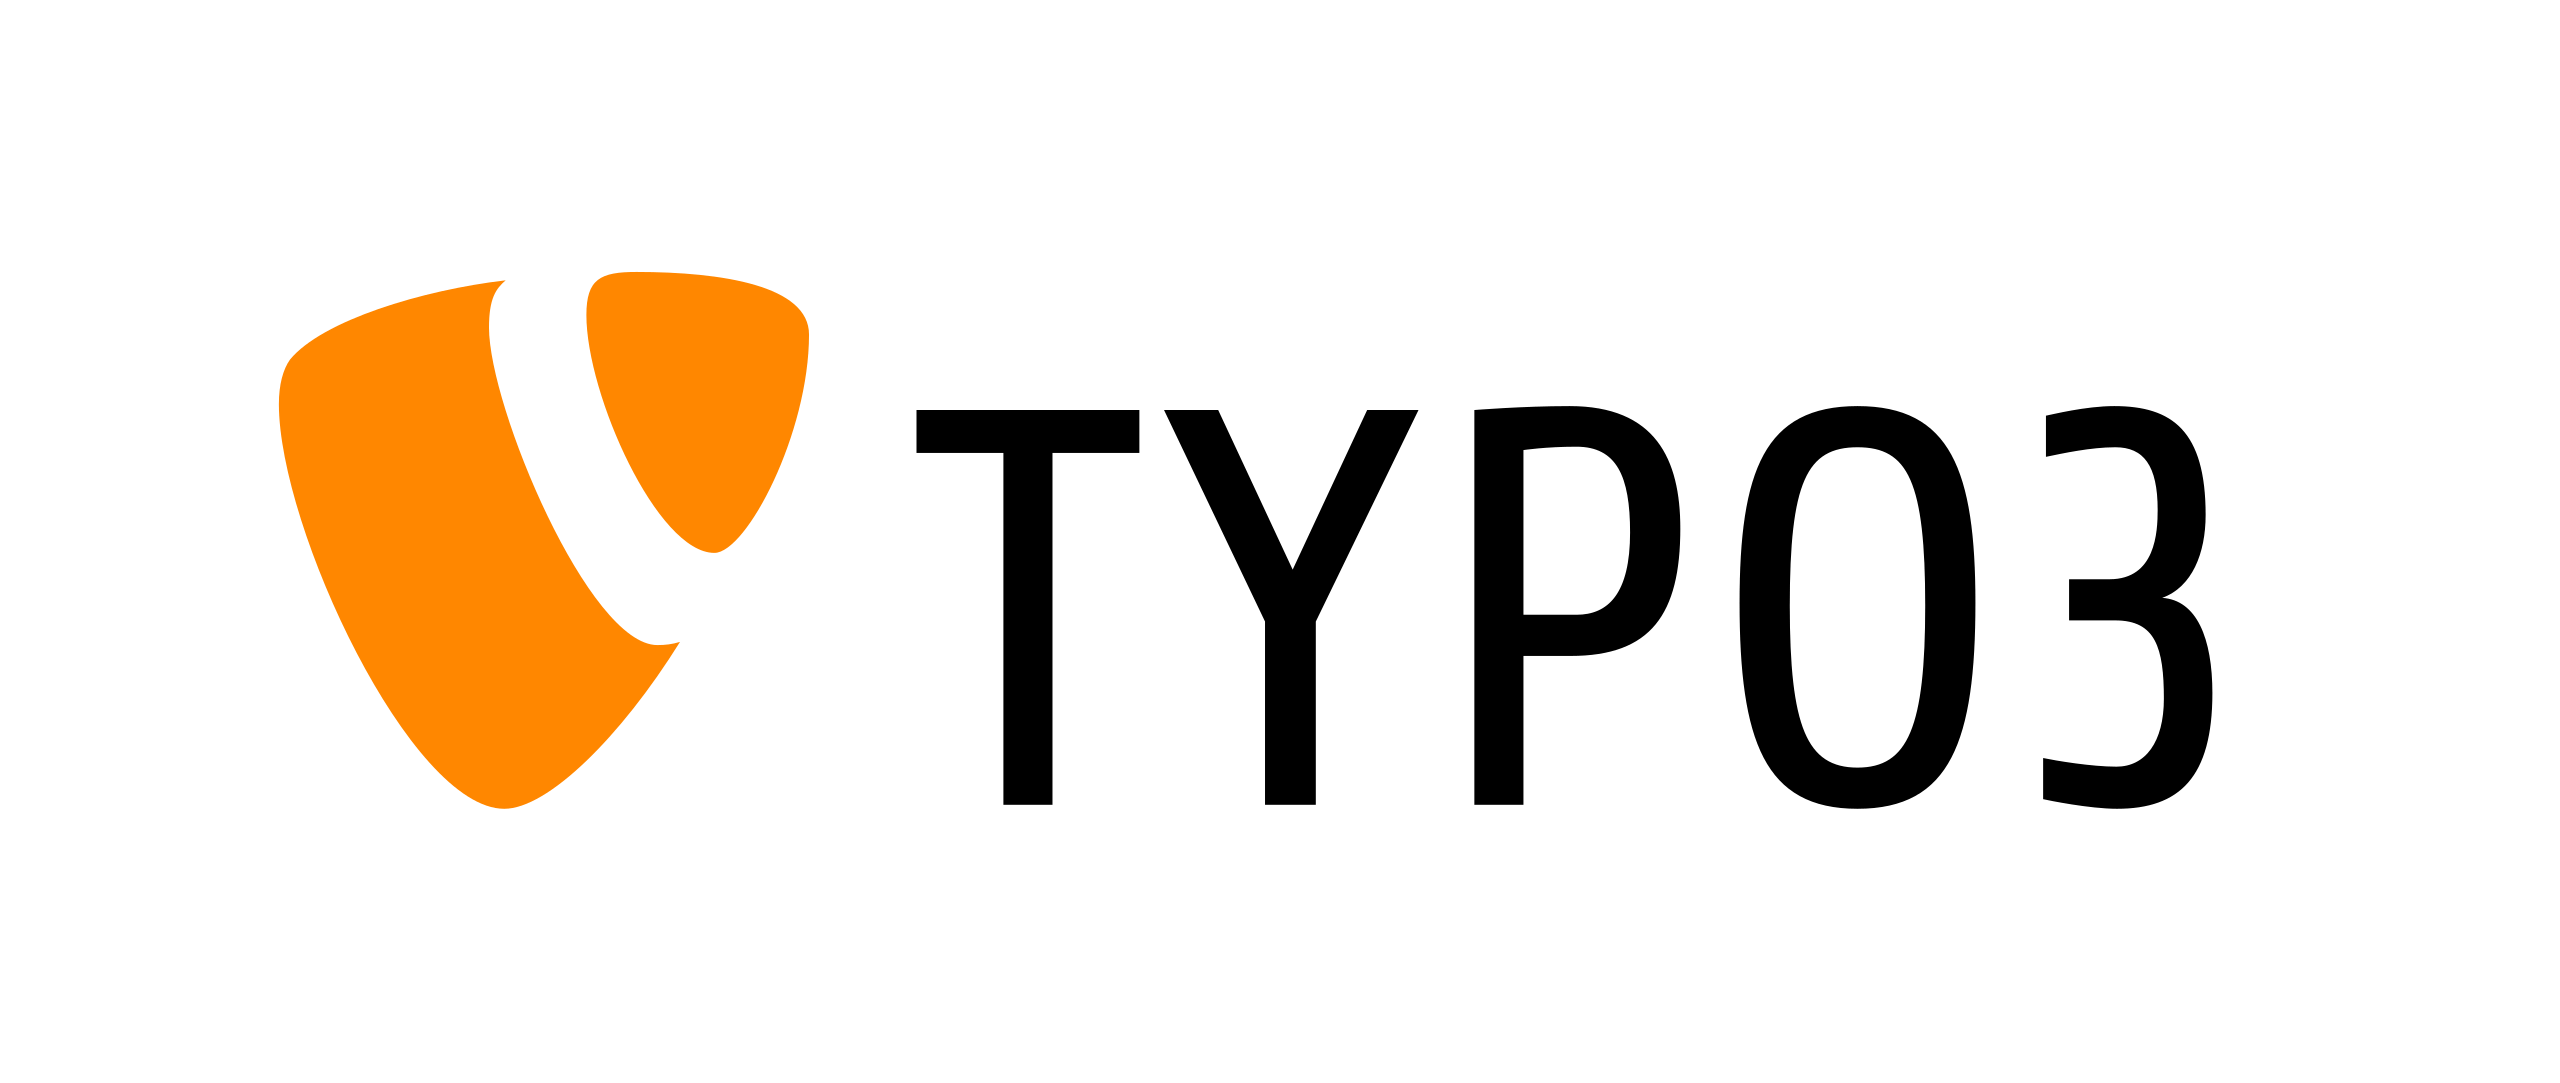 TYPO3 cms logo